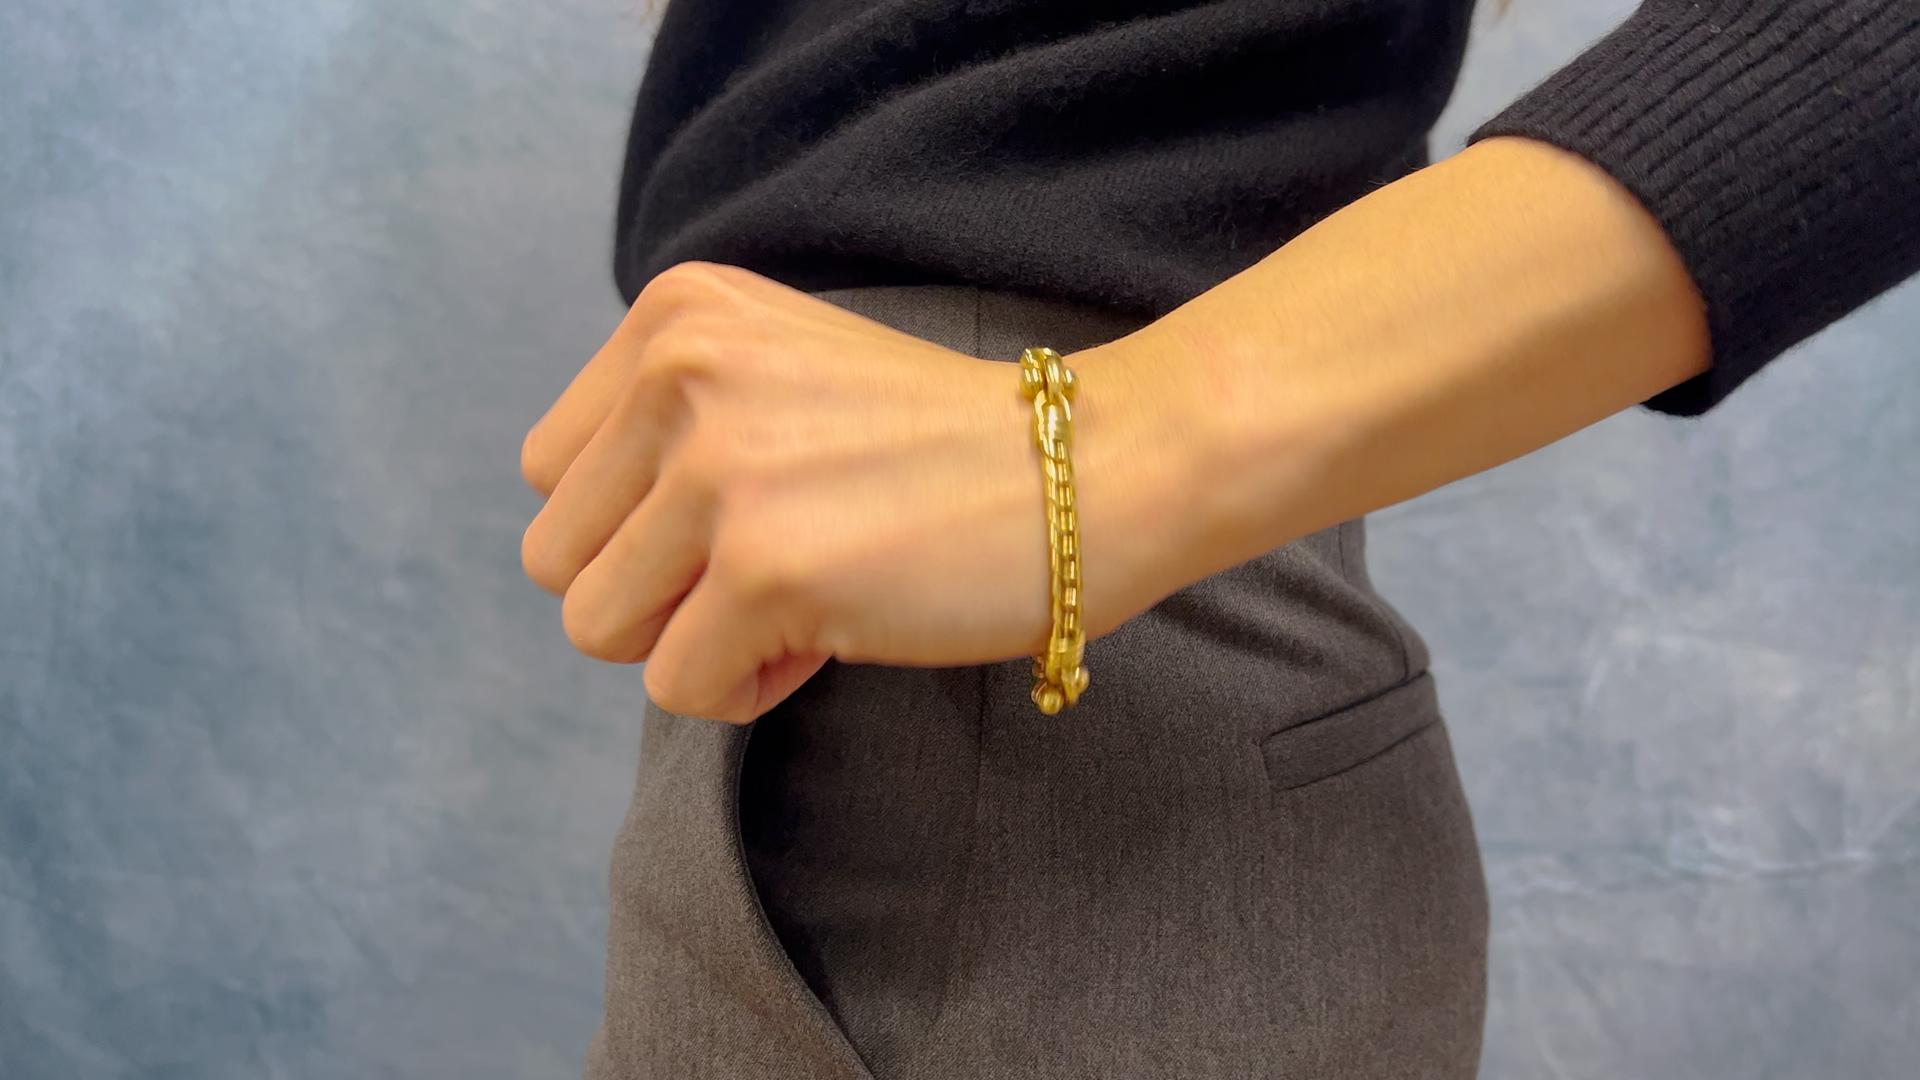 Un bracelet Vintage Bvlgari Italy 18k Yellow Gold Chain Link Bracelet. Réalisée en or jaune 18 carats, signée Bvlgari, numéro de série A4608 avec poinçons italiens, pesant 37,35 grammes. Circa 1970. Le bracelet mesure 7 ¾ pouces de long.

About this